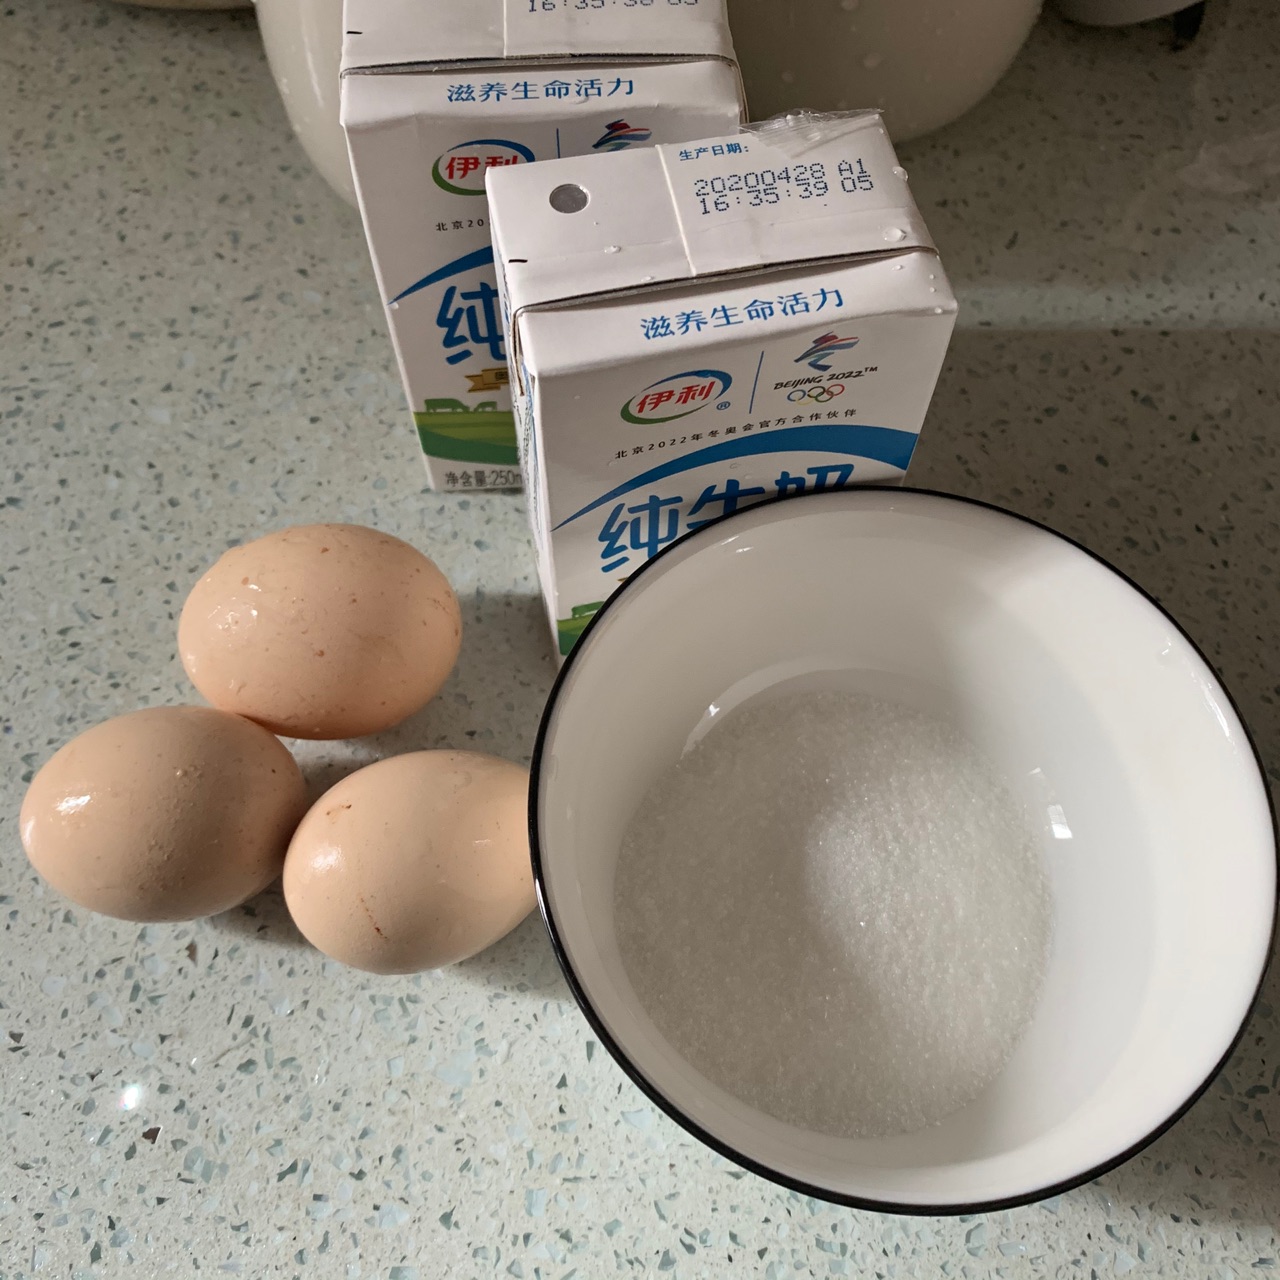 红豆牛奶炖蛋的做法_【图解】红豆牛奶炖蛋怎么做如何做好吃_红豆牛奶炖蛋家常做法大全_公子amanda_豆果美食